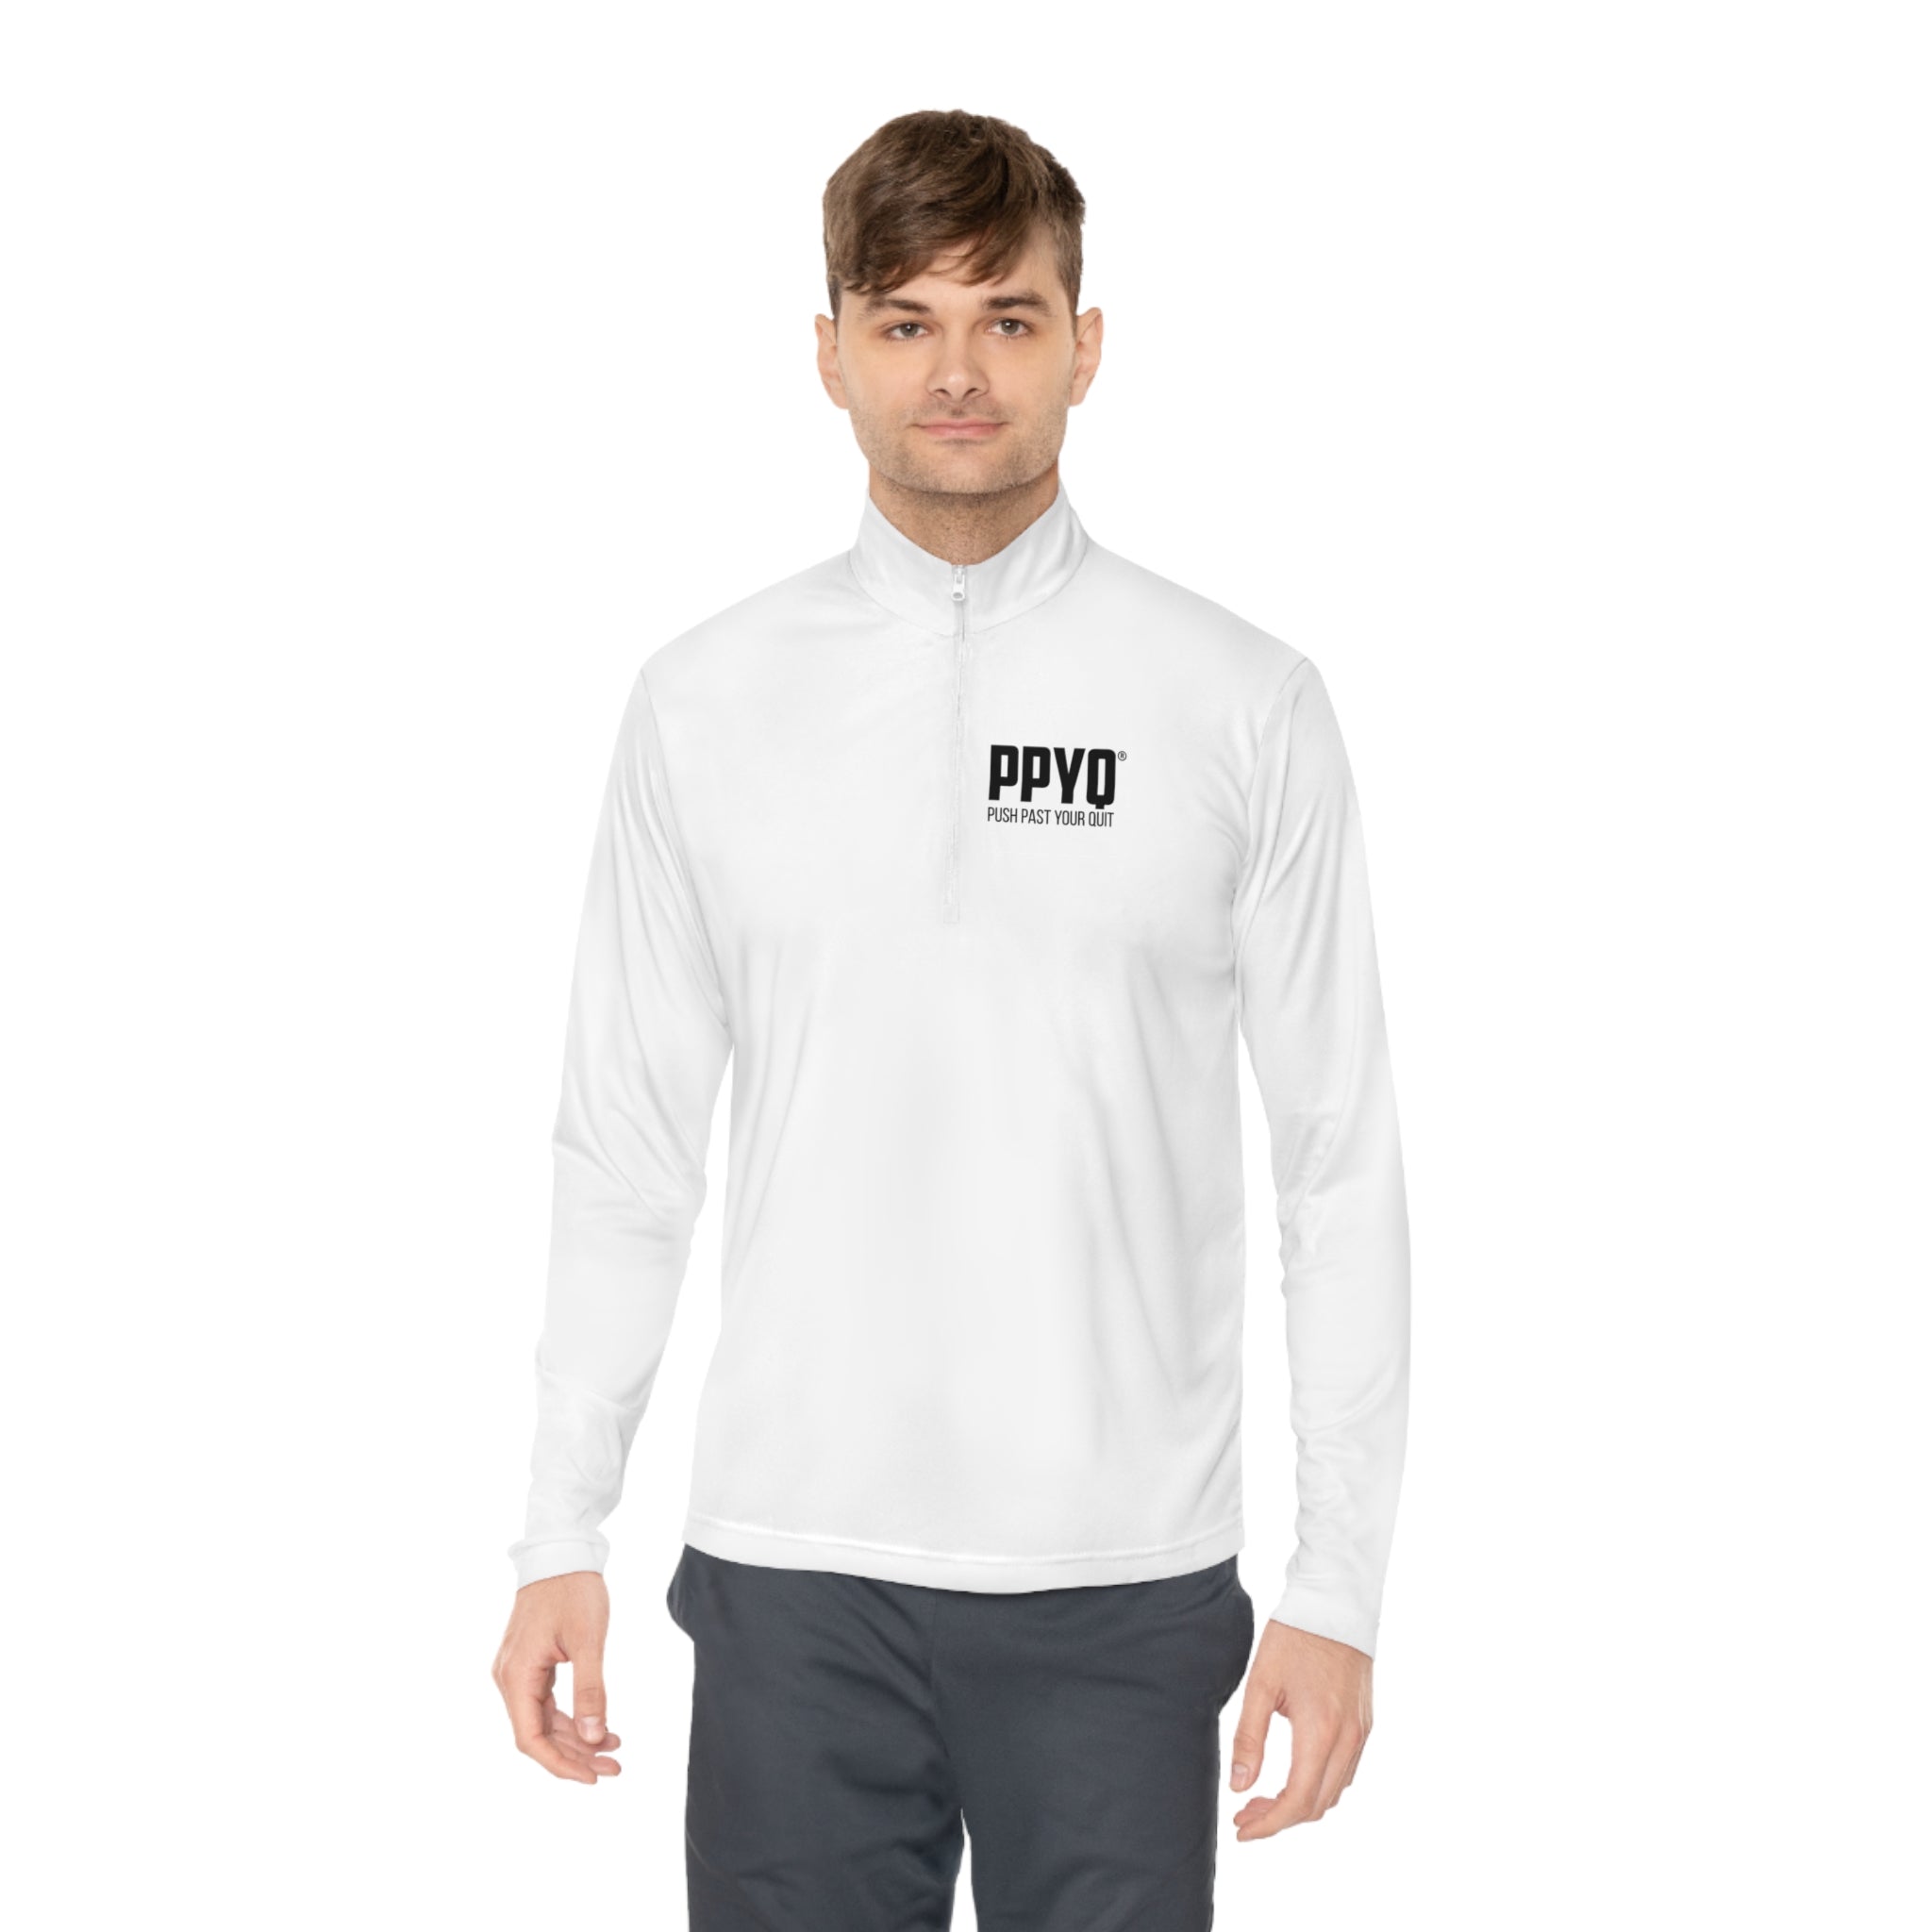 PPYQ® Original Unisex Quarter-Zip Pullover